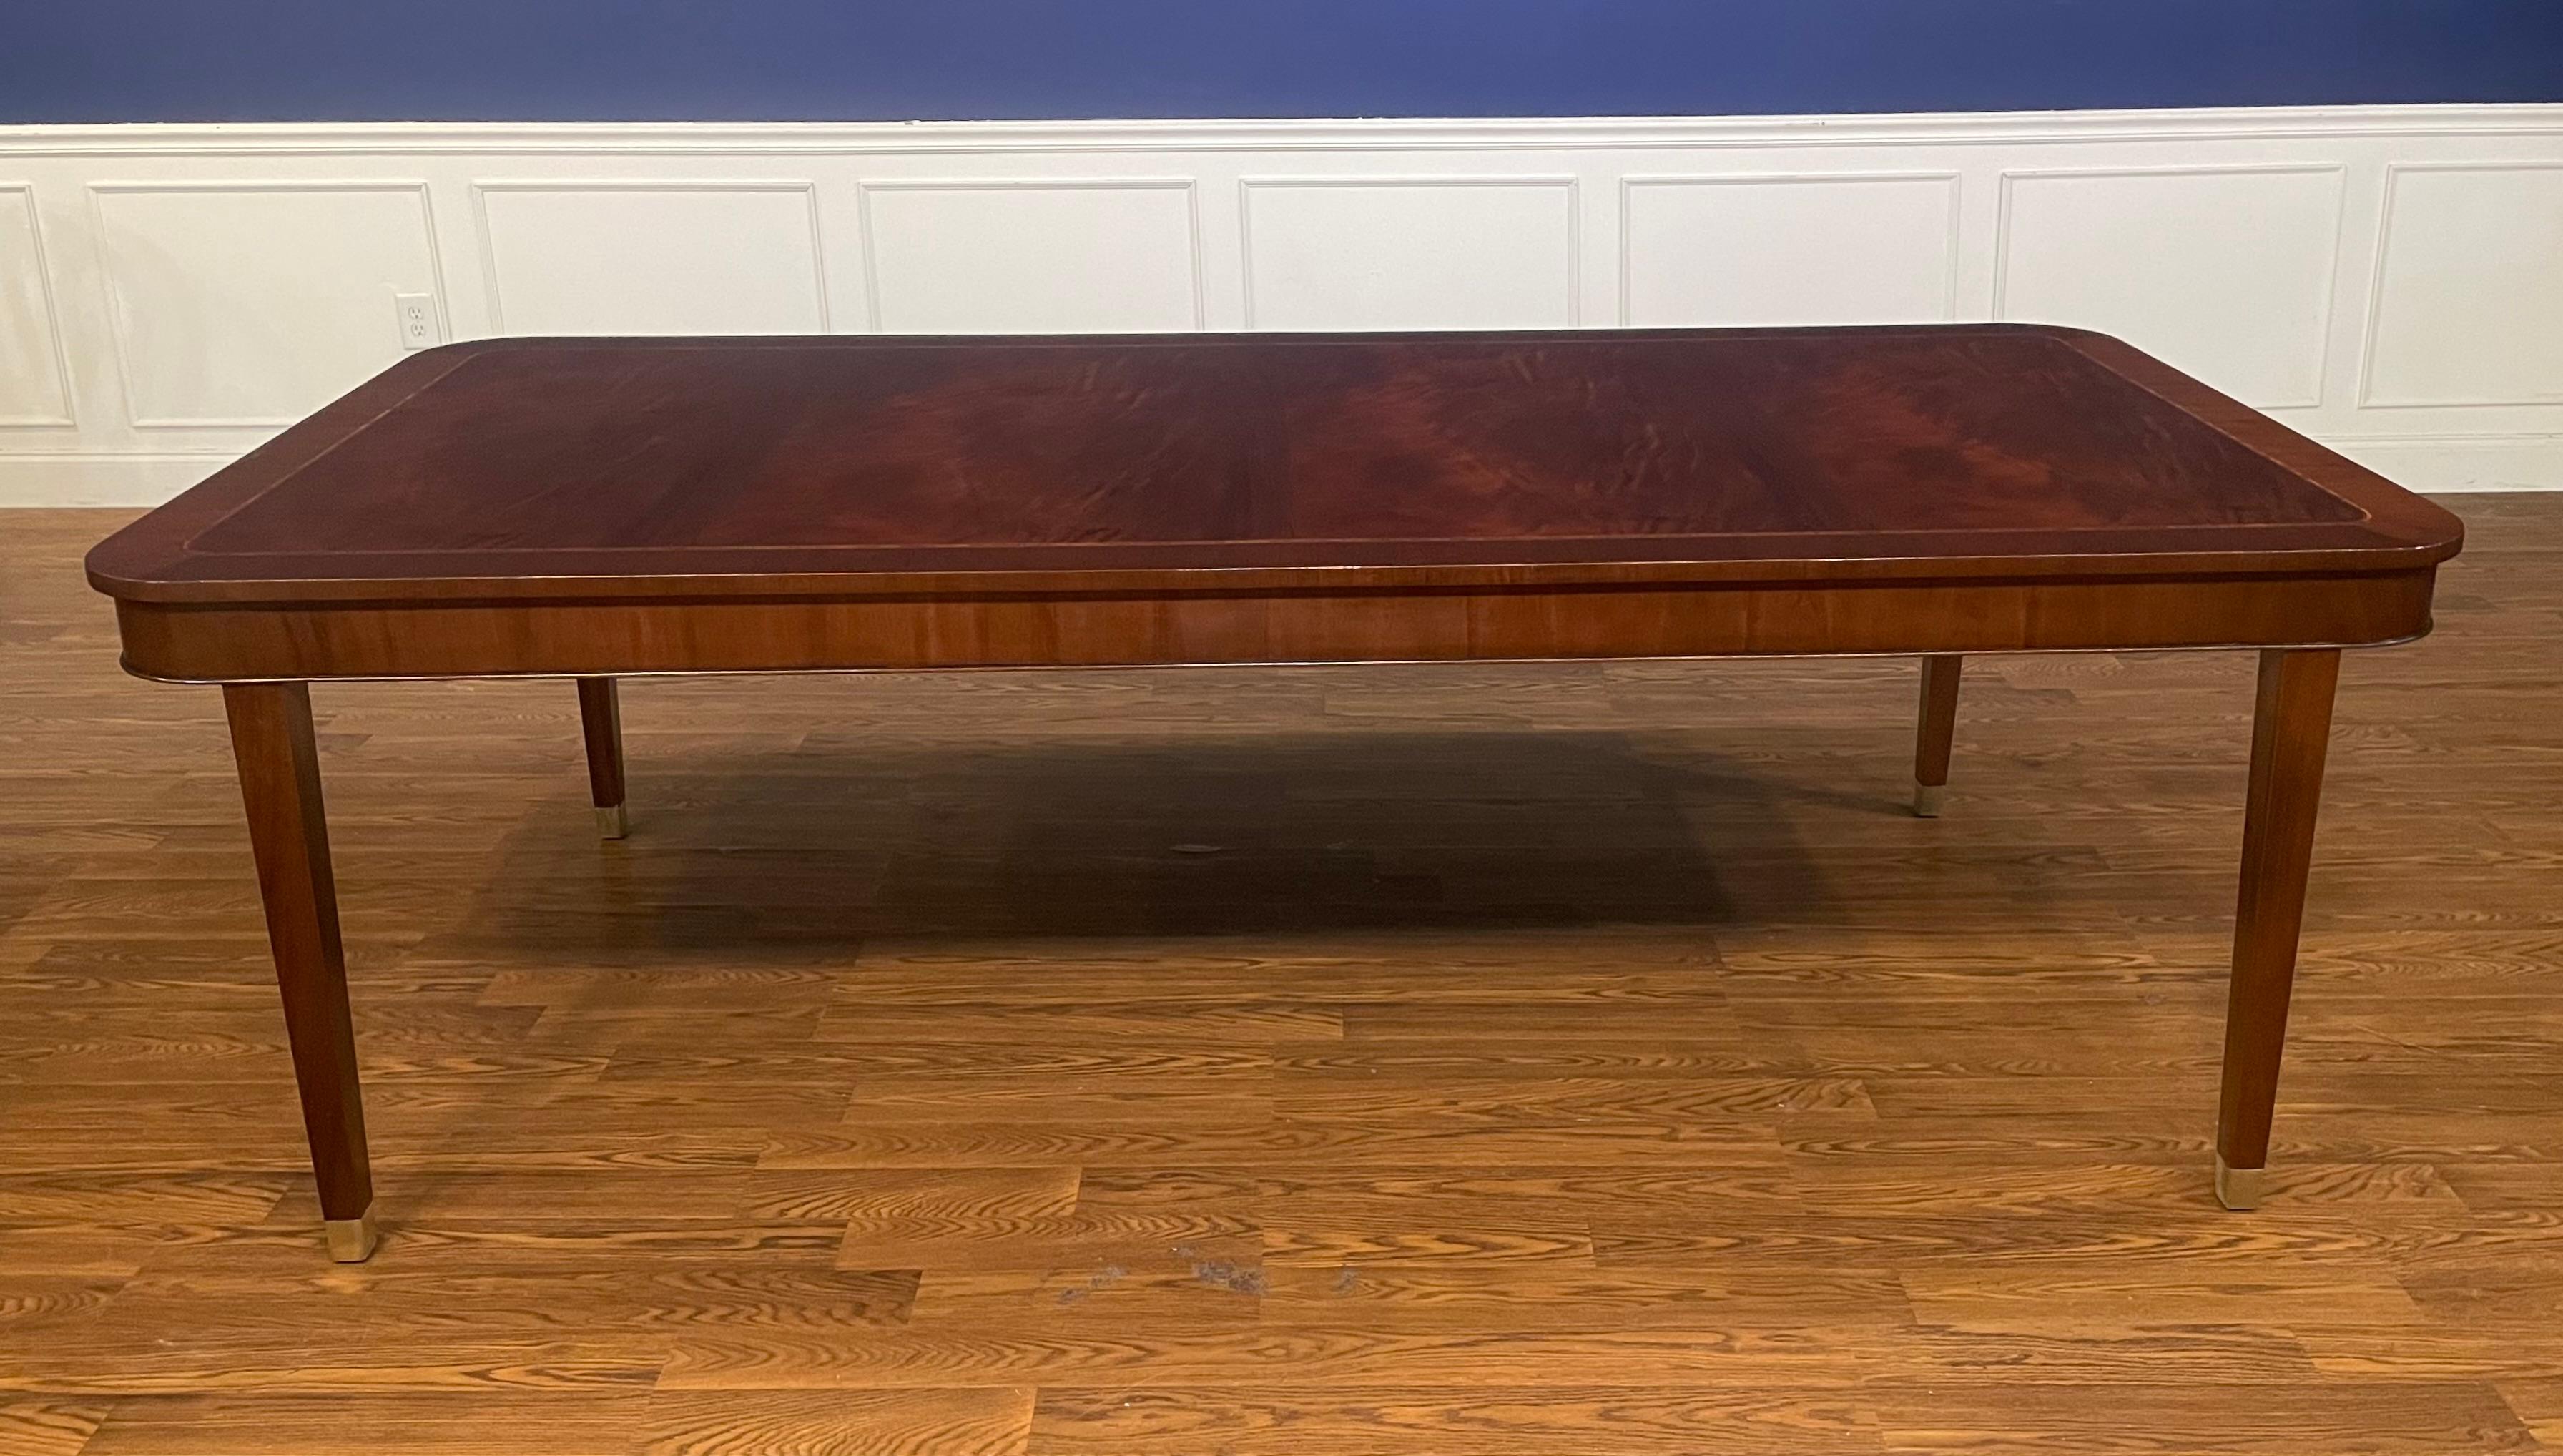 Dieser Tisch wird auf Bestellung in der Werkstatt von Leighton Hall in Suwanee, Georgia, hergestellt. Es zeichnet sich durch das klassische Hepplewhite-Design mit einem gewirbelten Mahagoni-Feld, einer geradlinig gemaserten Mahagoni-Bordüre und